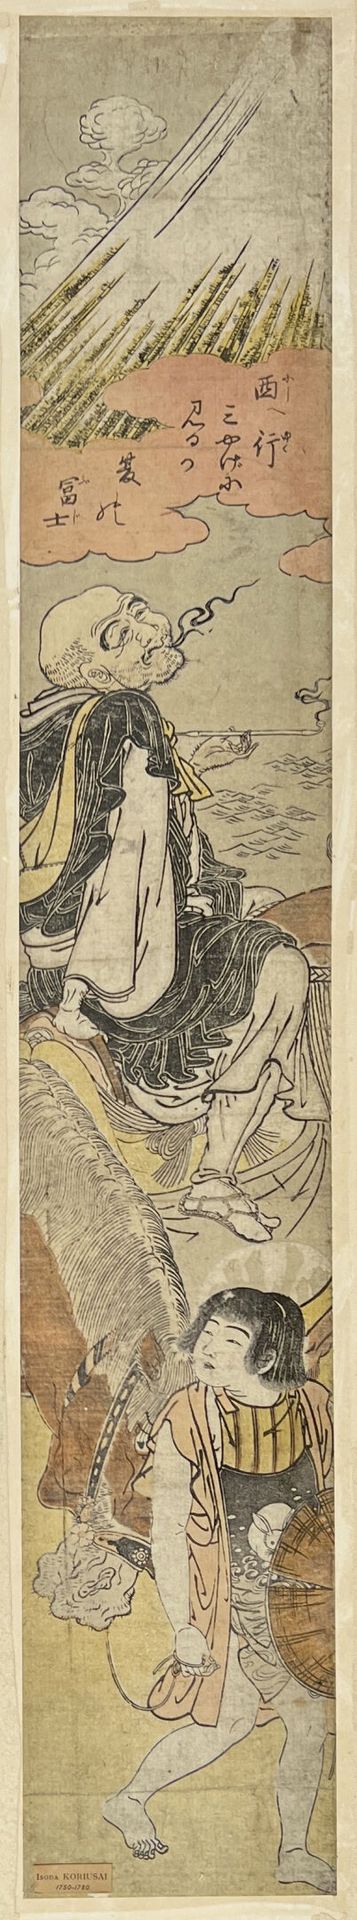 Null 矶田高丽斋(1735-1790)
Hashira-e, 诗人Sagyo Hoshi坐在他的仆人牵着的骡子上，沉思着富士山并作了一首诗。 
没有签名。(&hellip;